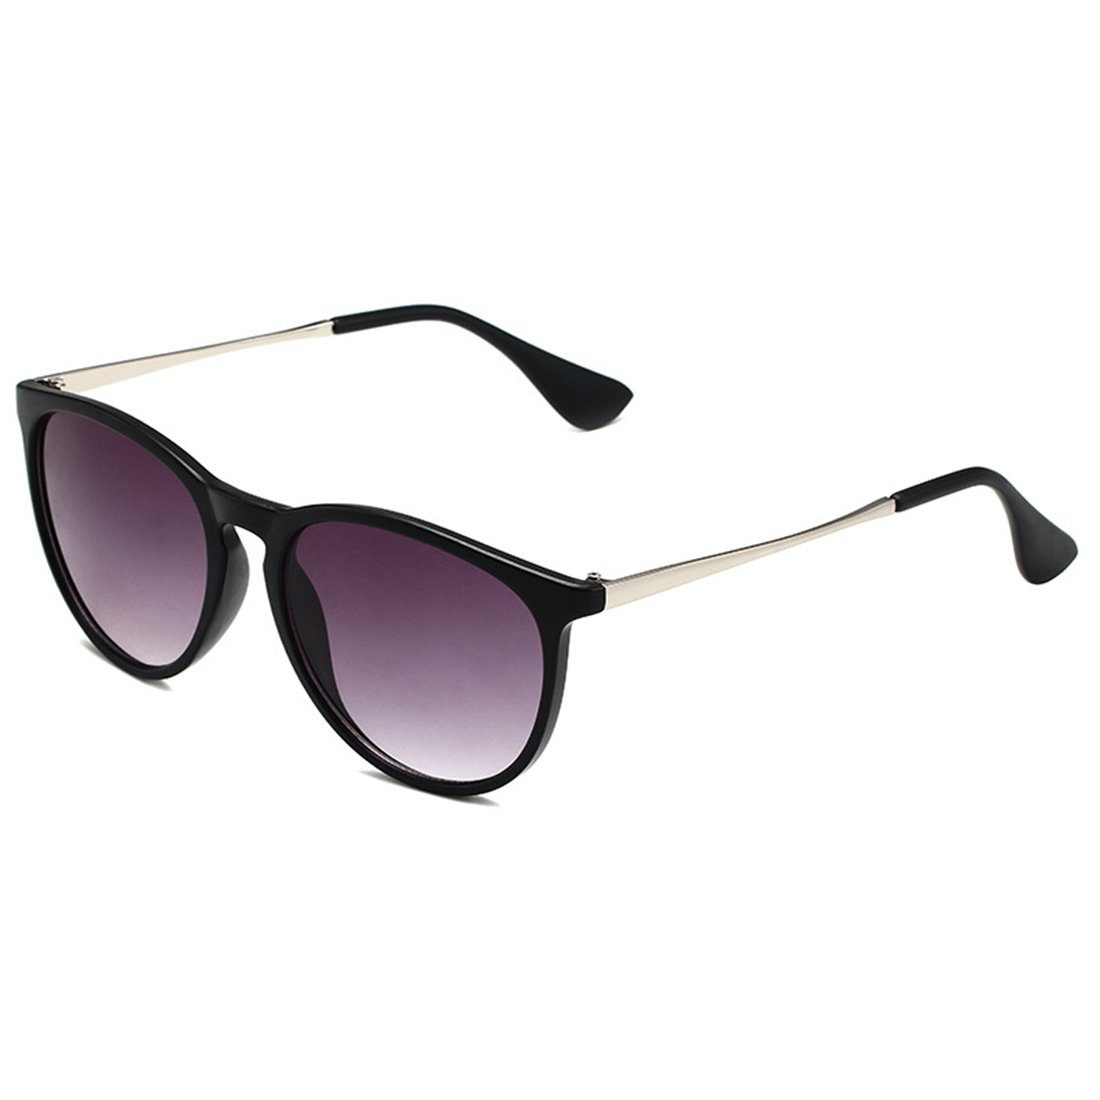 Haiaveng Sonnenbrille Vintage Runde Sonnenbrille Unisex Modische Retro-Brille,Brille mit UV400-Schutz purple